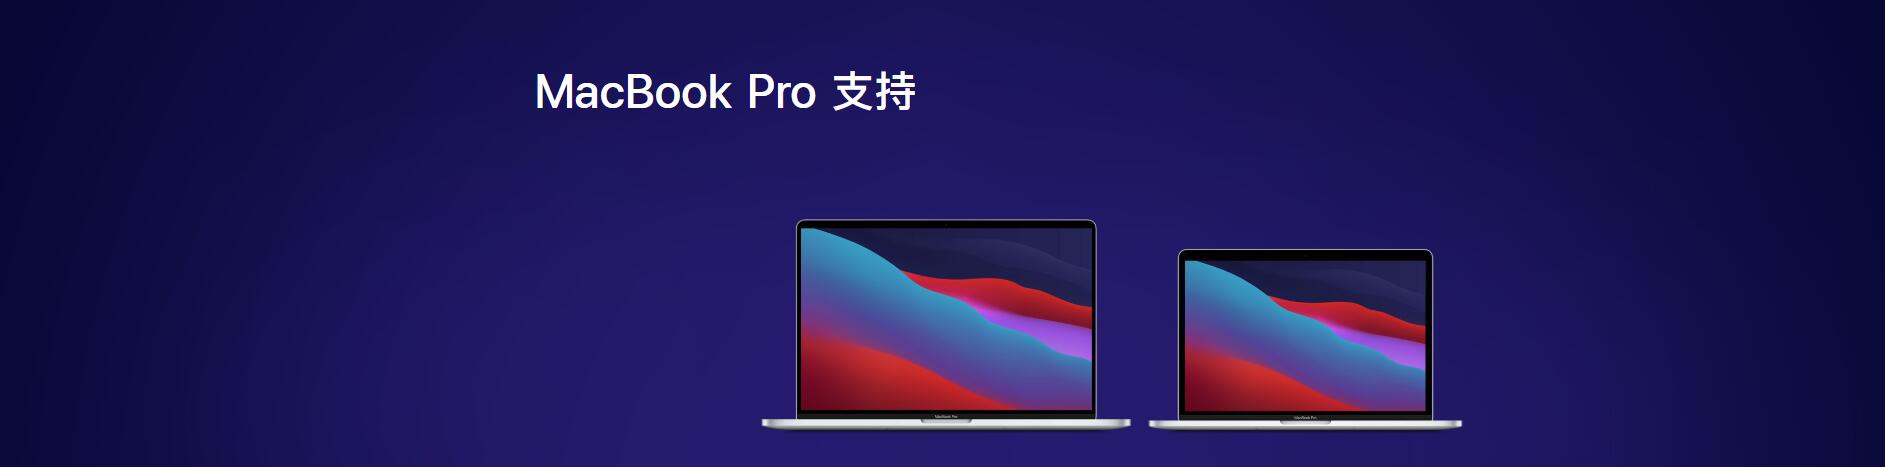 深圳蘋果電腦維修點